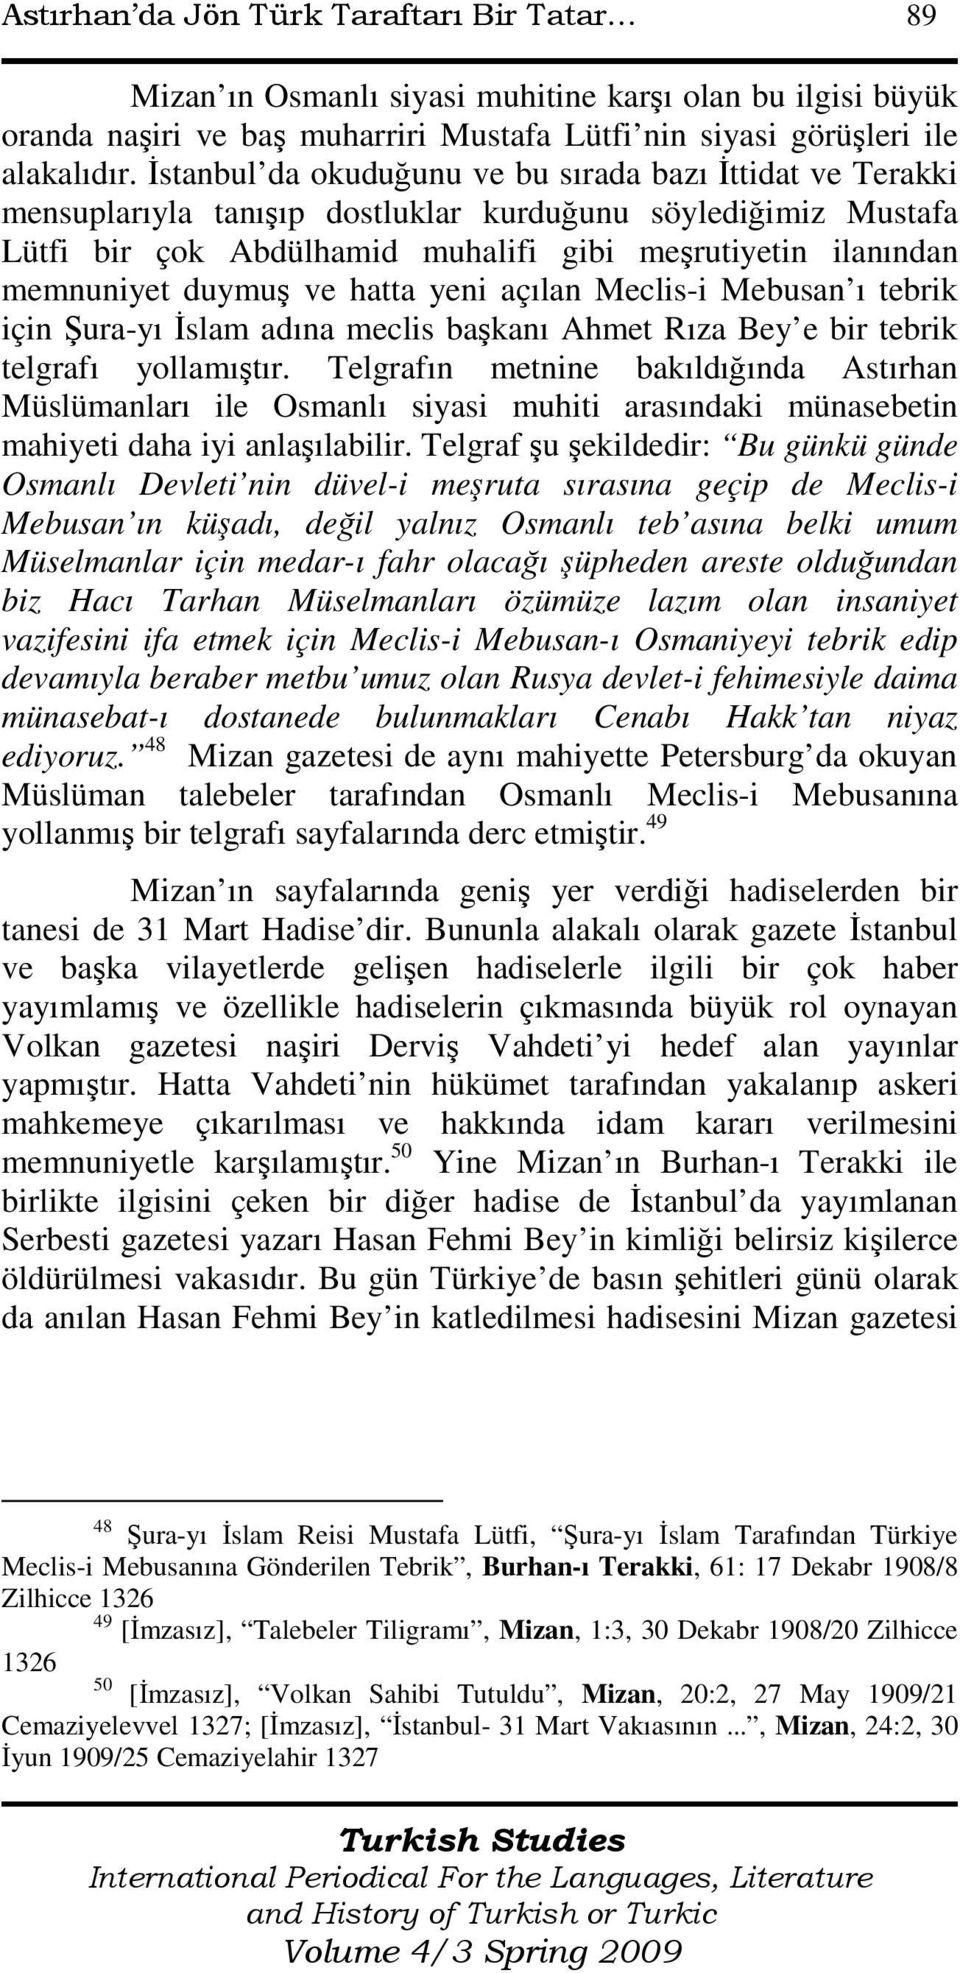 duymuş ve hatta yeni açılan Meclis-i Mebusan ı tebrik için Şura-yı Đslam adına meclis başkanı Ahmet Rıza Bey e bir tebrik telgrafı yollamıştır.